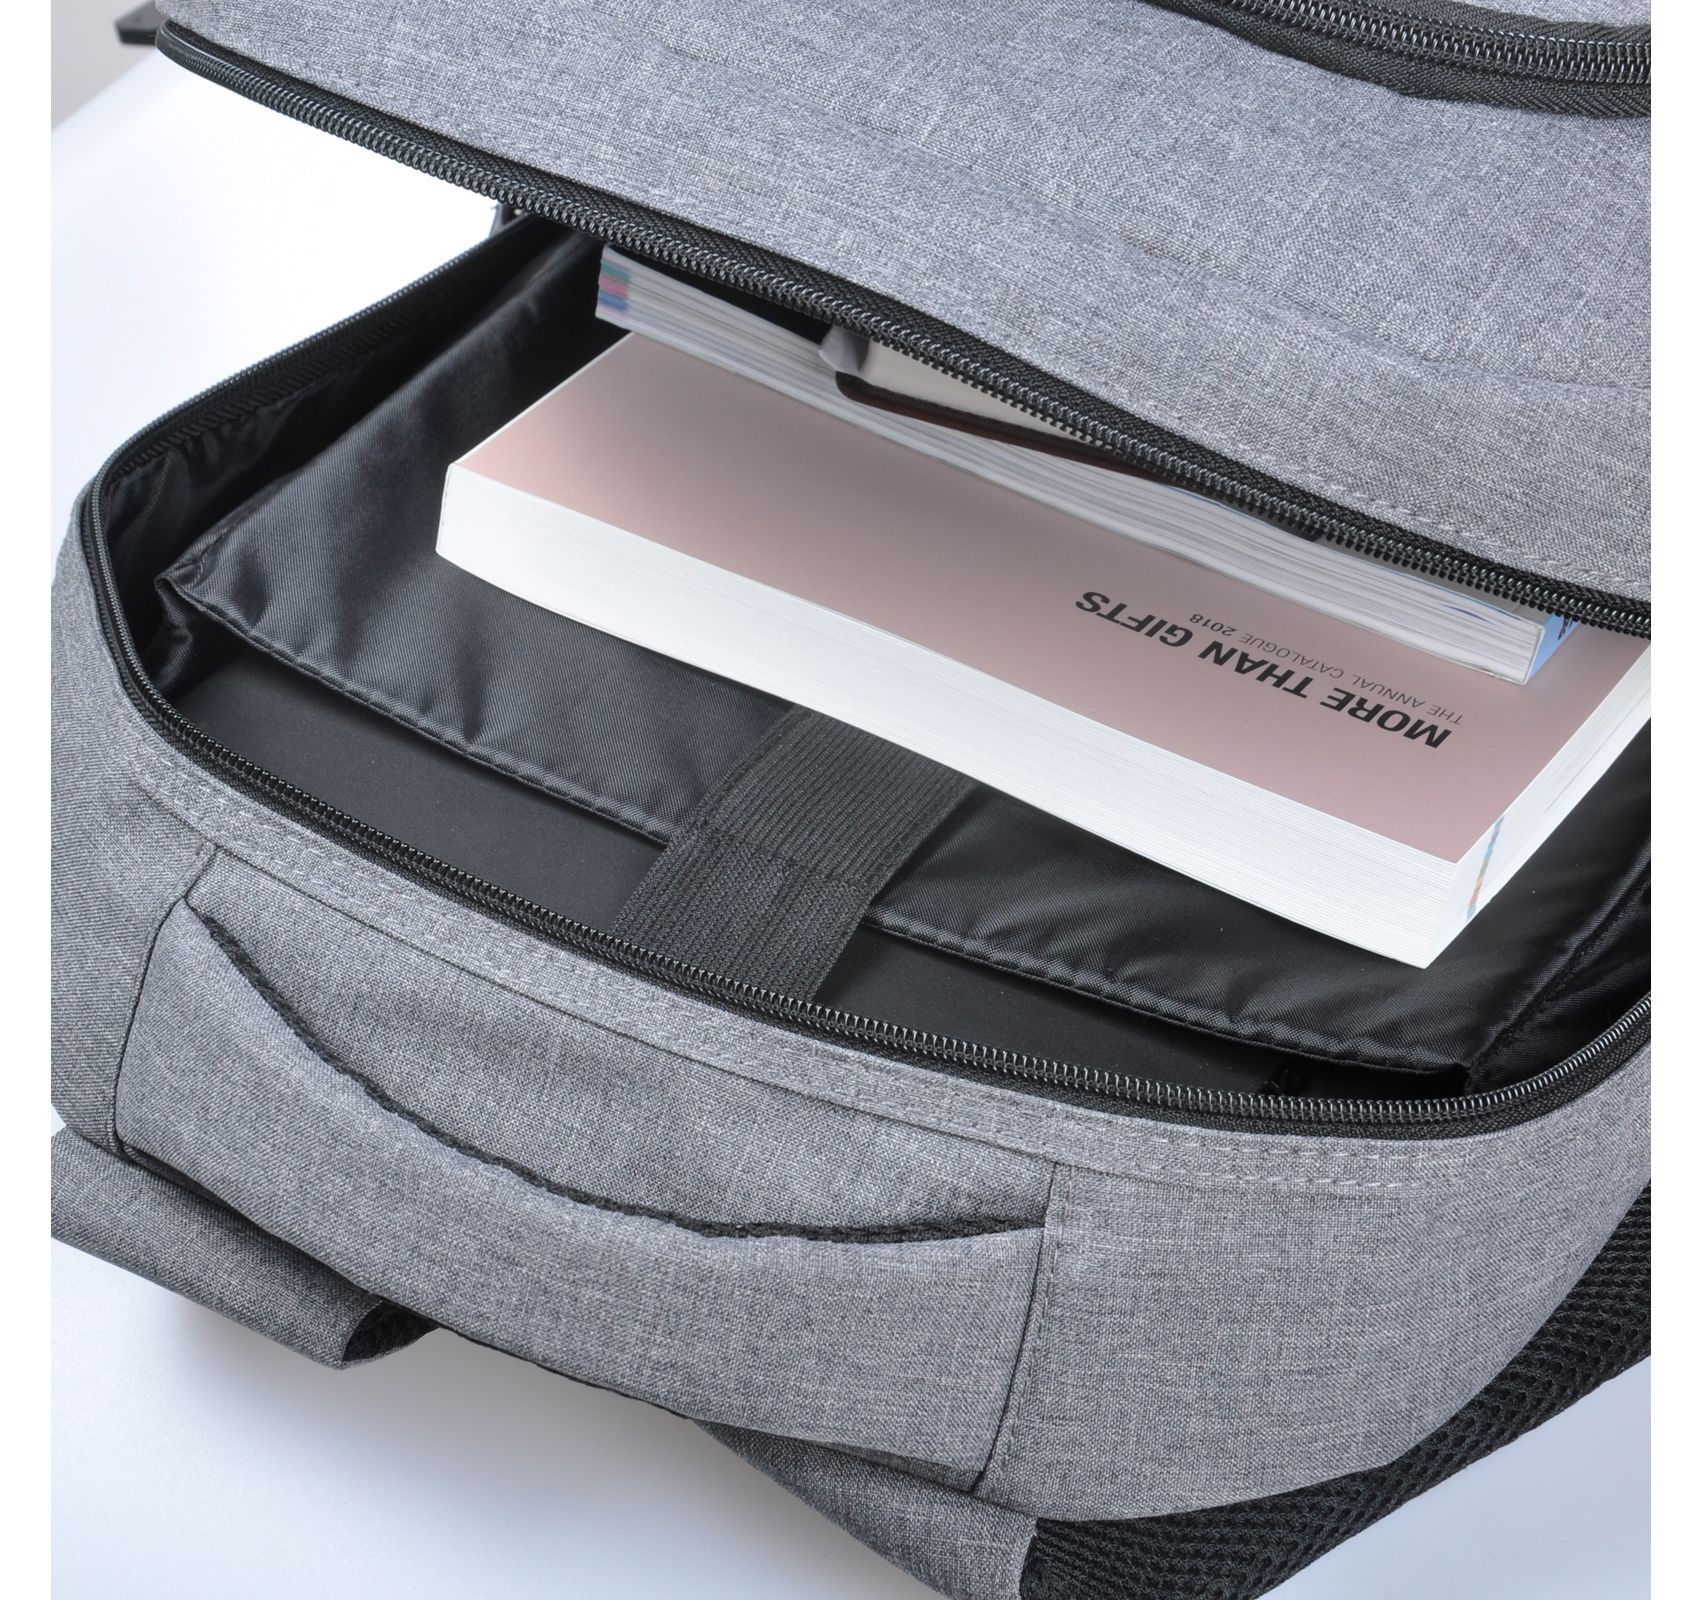 Серый с синей вставкой рюкзак для ноутбука 15” Accord